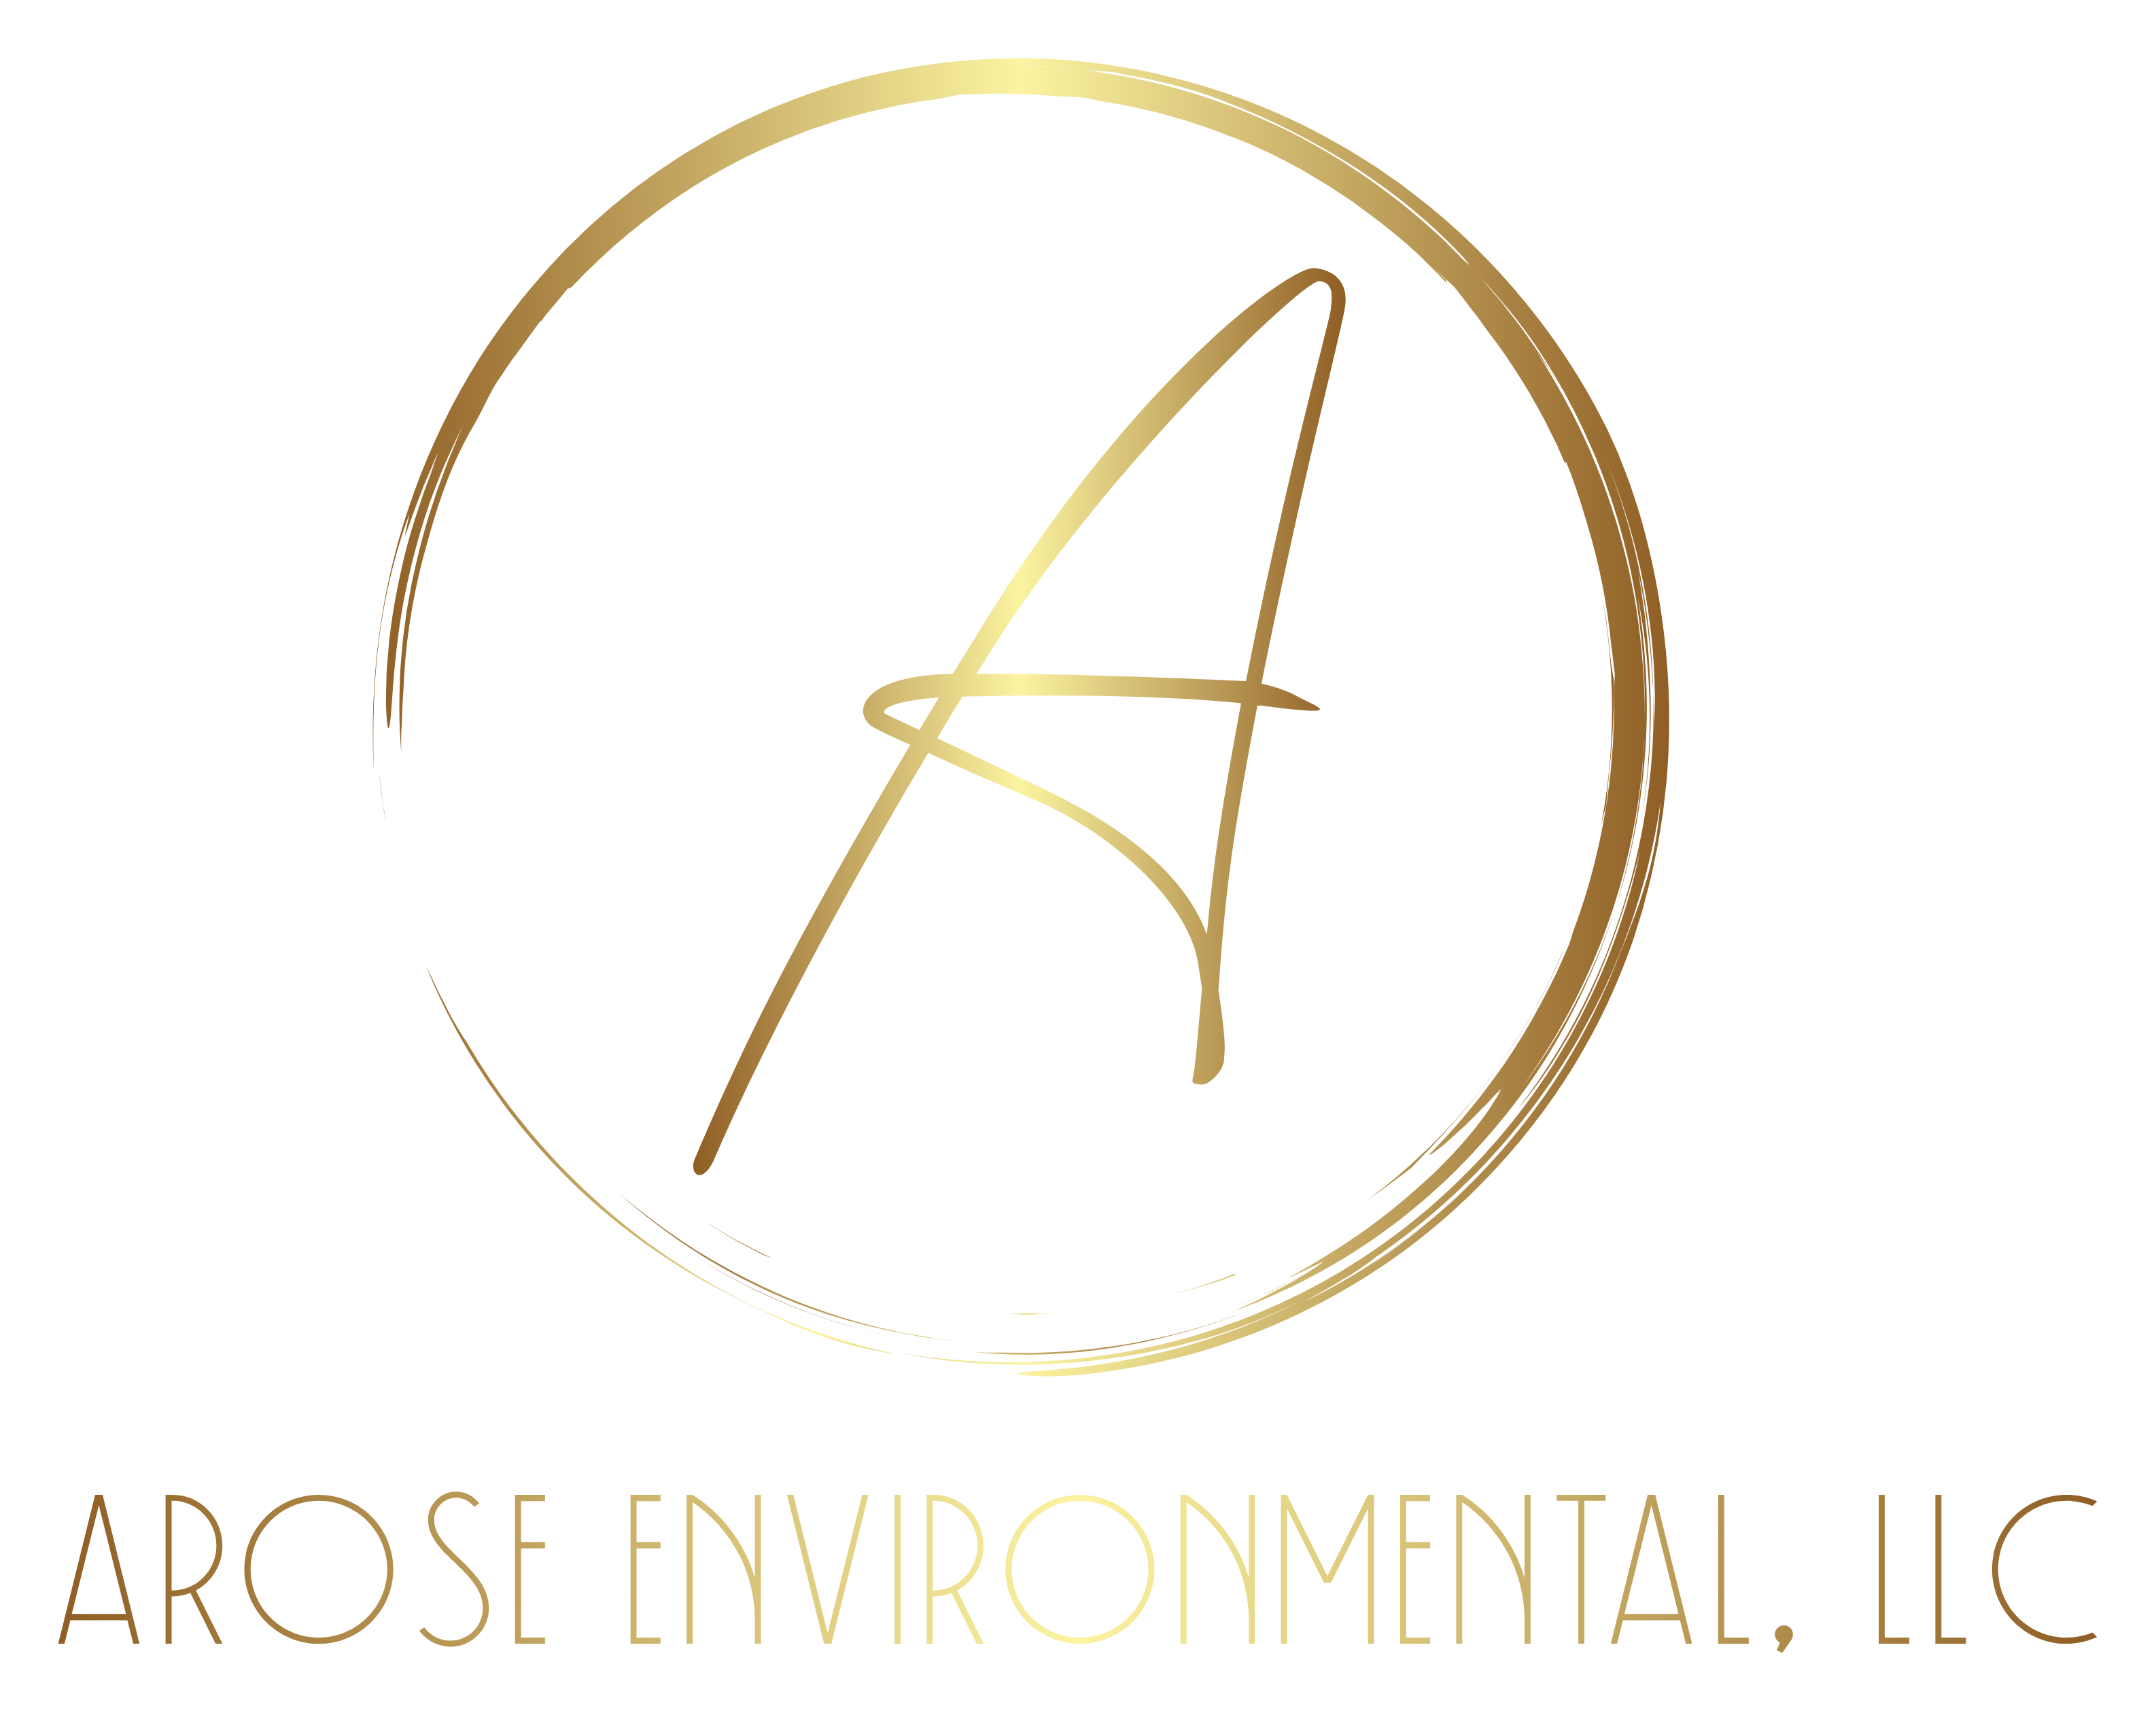 AroSe Environmental, LLC Logo